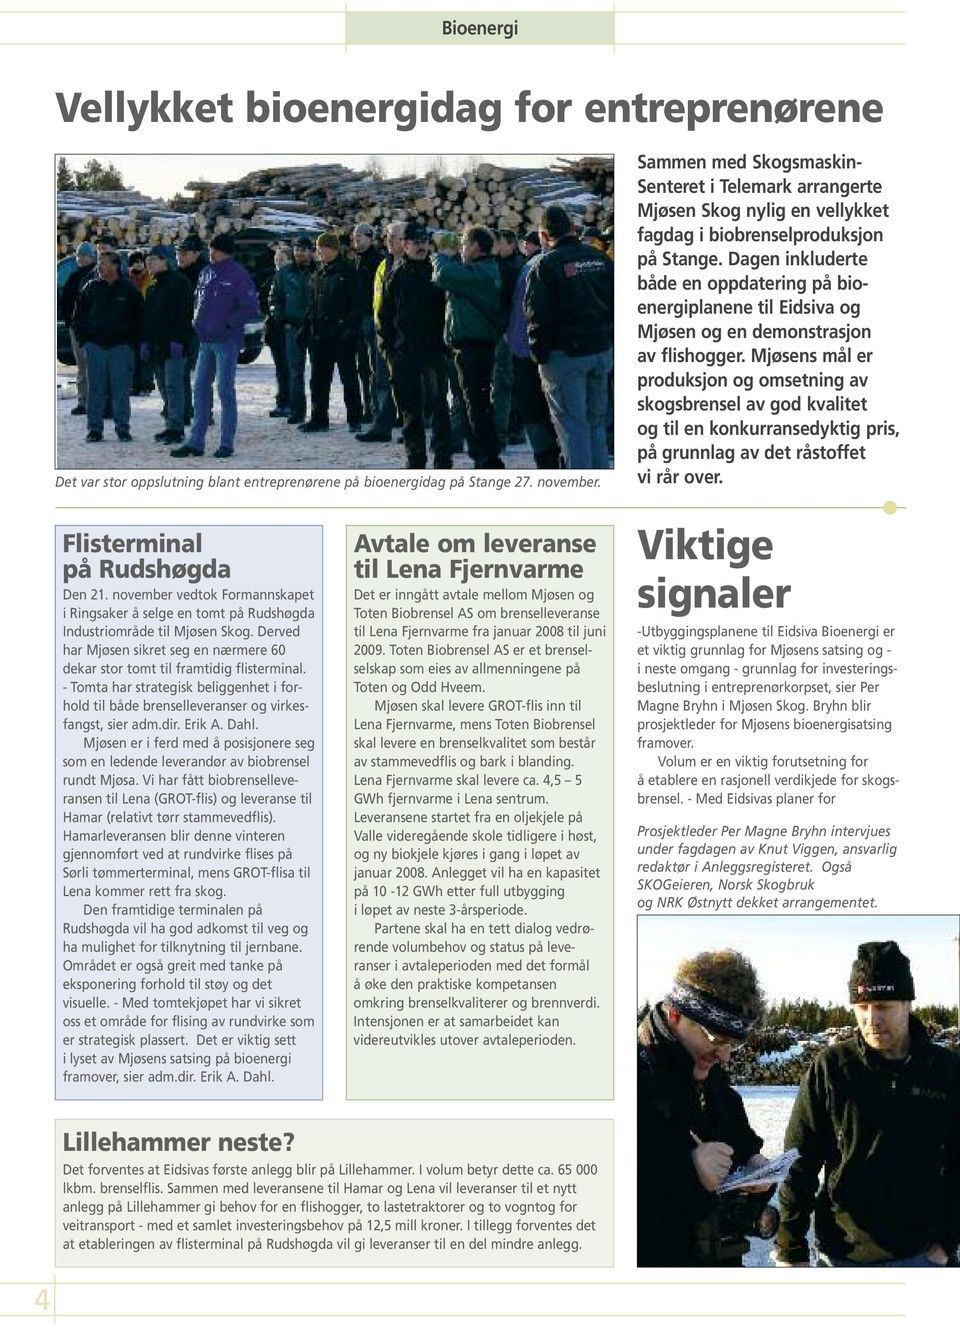 Dagen inkluderte både en oppdatering på bioenergiplanene til Eidsiva og Mjøsen og en demonstrasjon av flishogger.